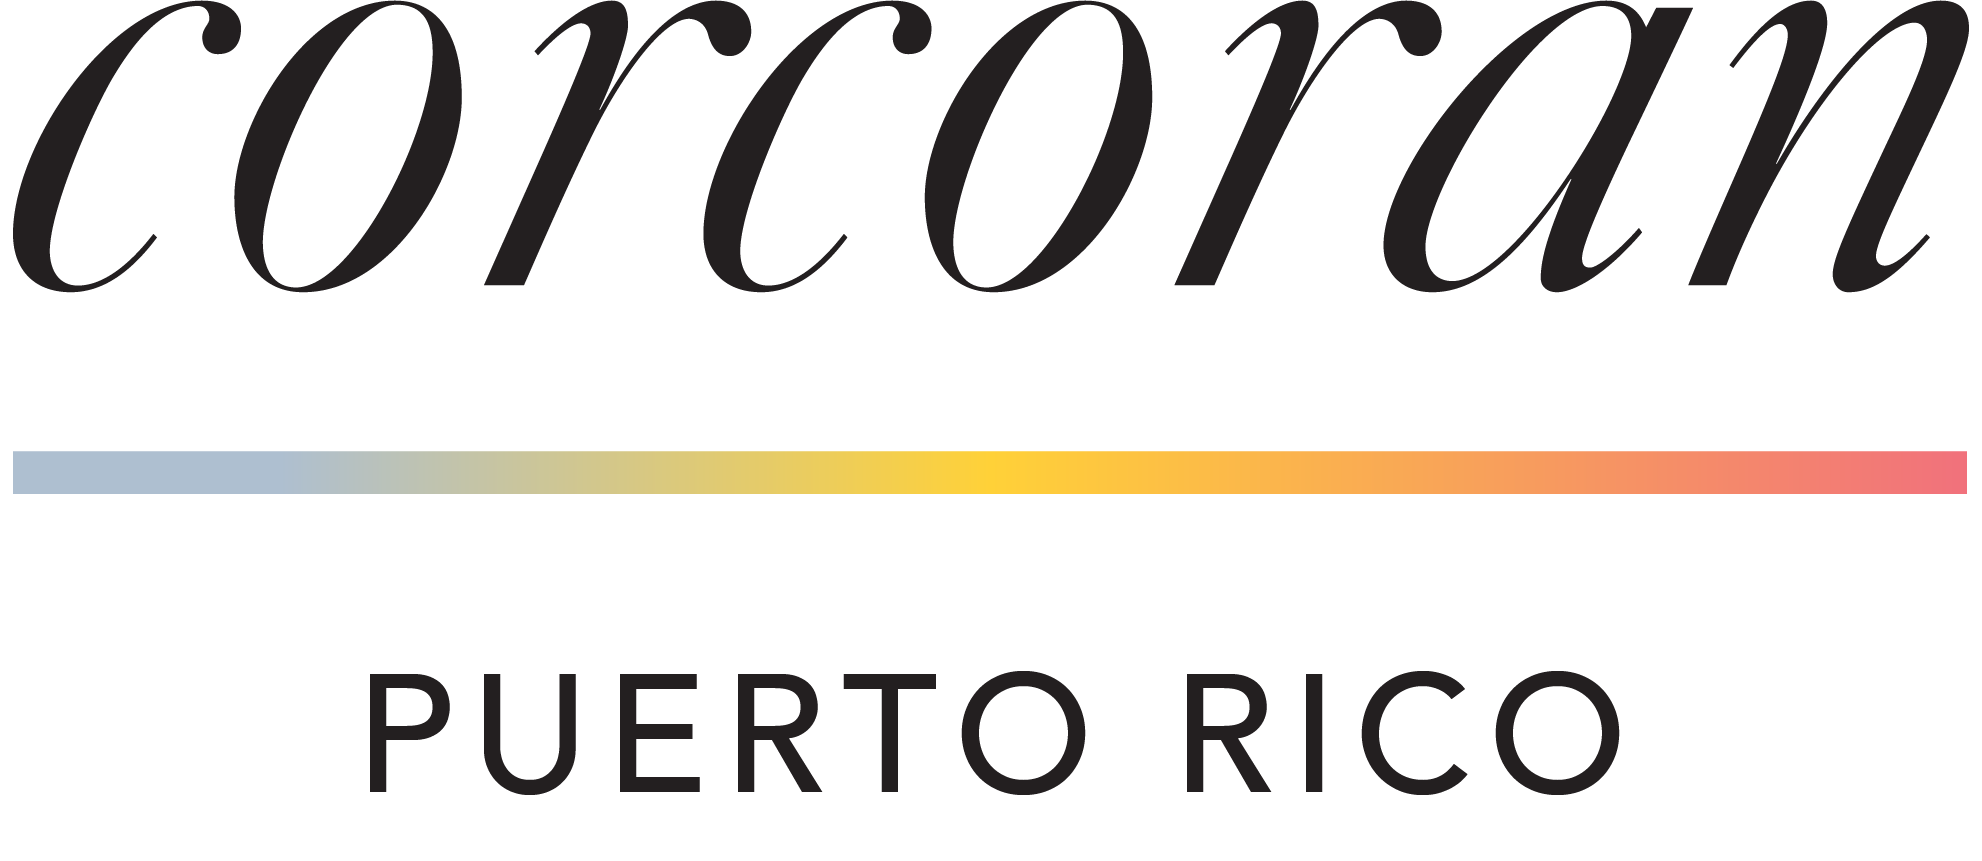 Building presented by Corcoran Puerto Rico